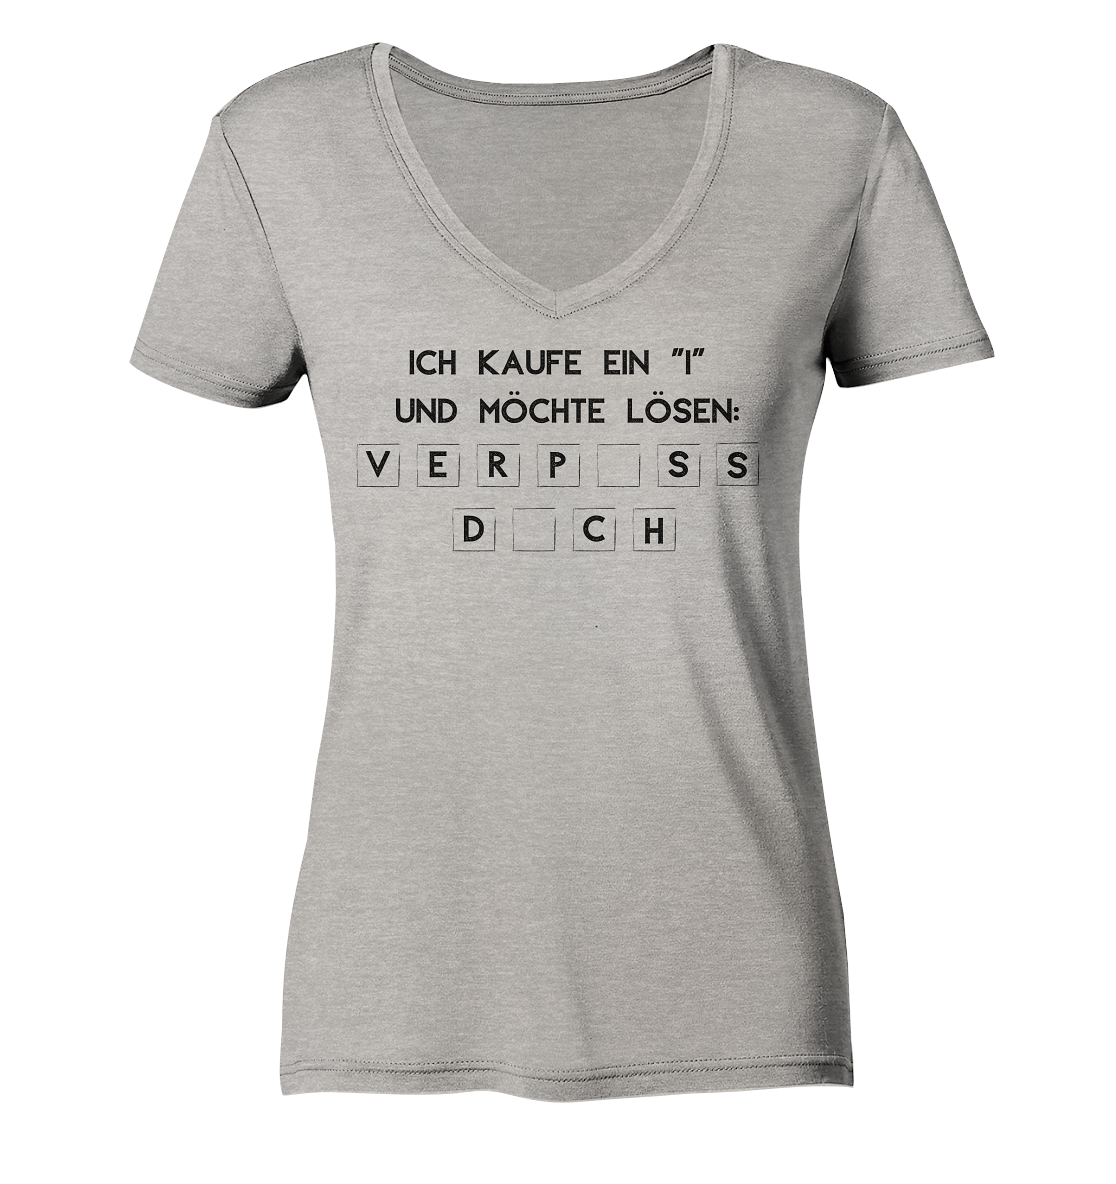 Ich kaufe ein "i" und möchte lösen: Verpiss dich - Ladies Organic V-Neck Shirt